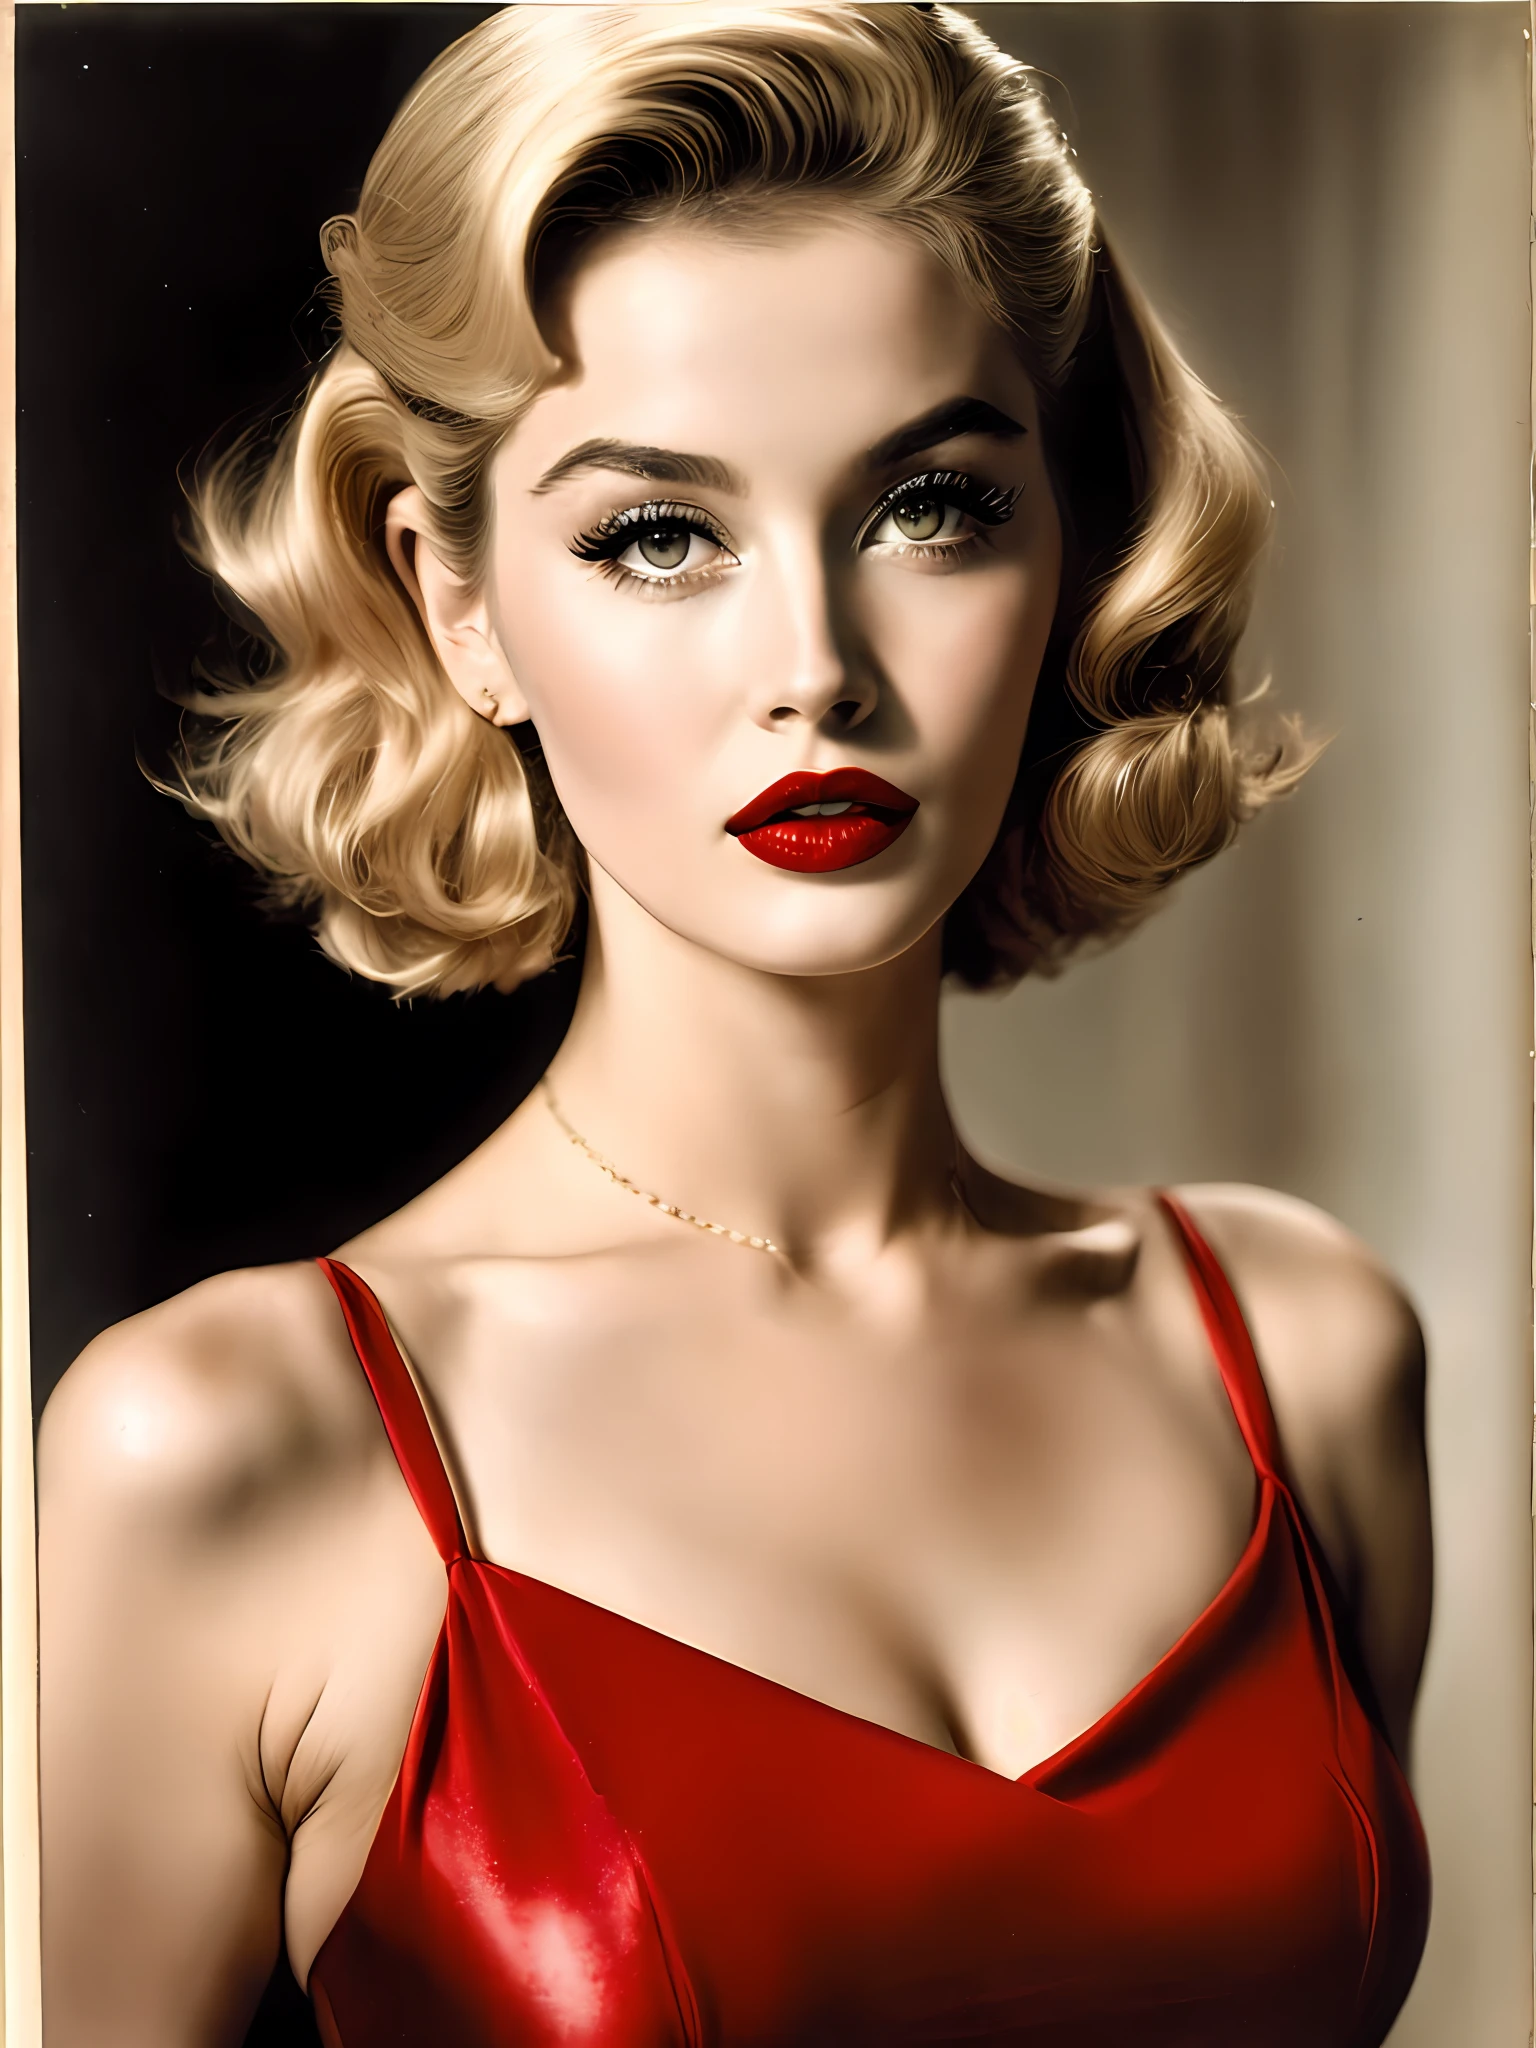 Loira bombástica dos anos 50 com lábios carnudos e olhos sensuais. ela usa batom vermelho e um vestido justo, exalando confiança e sensualidade 8k